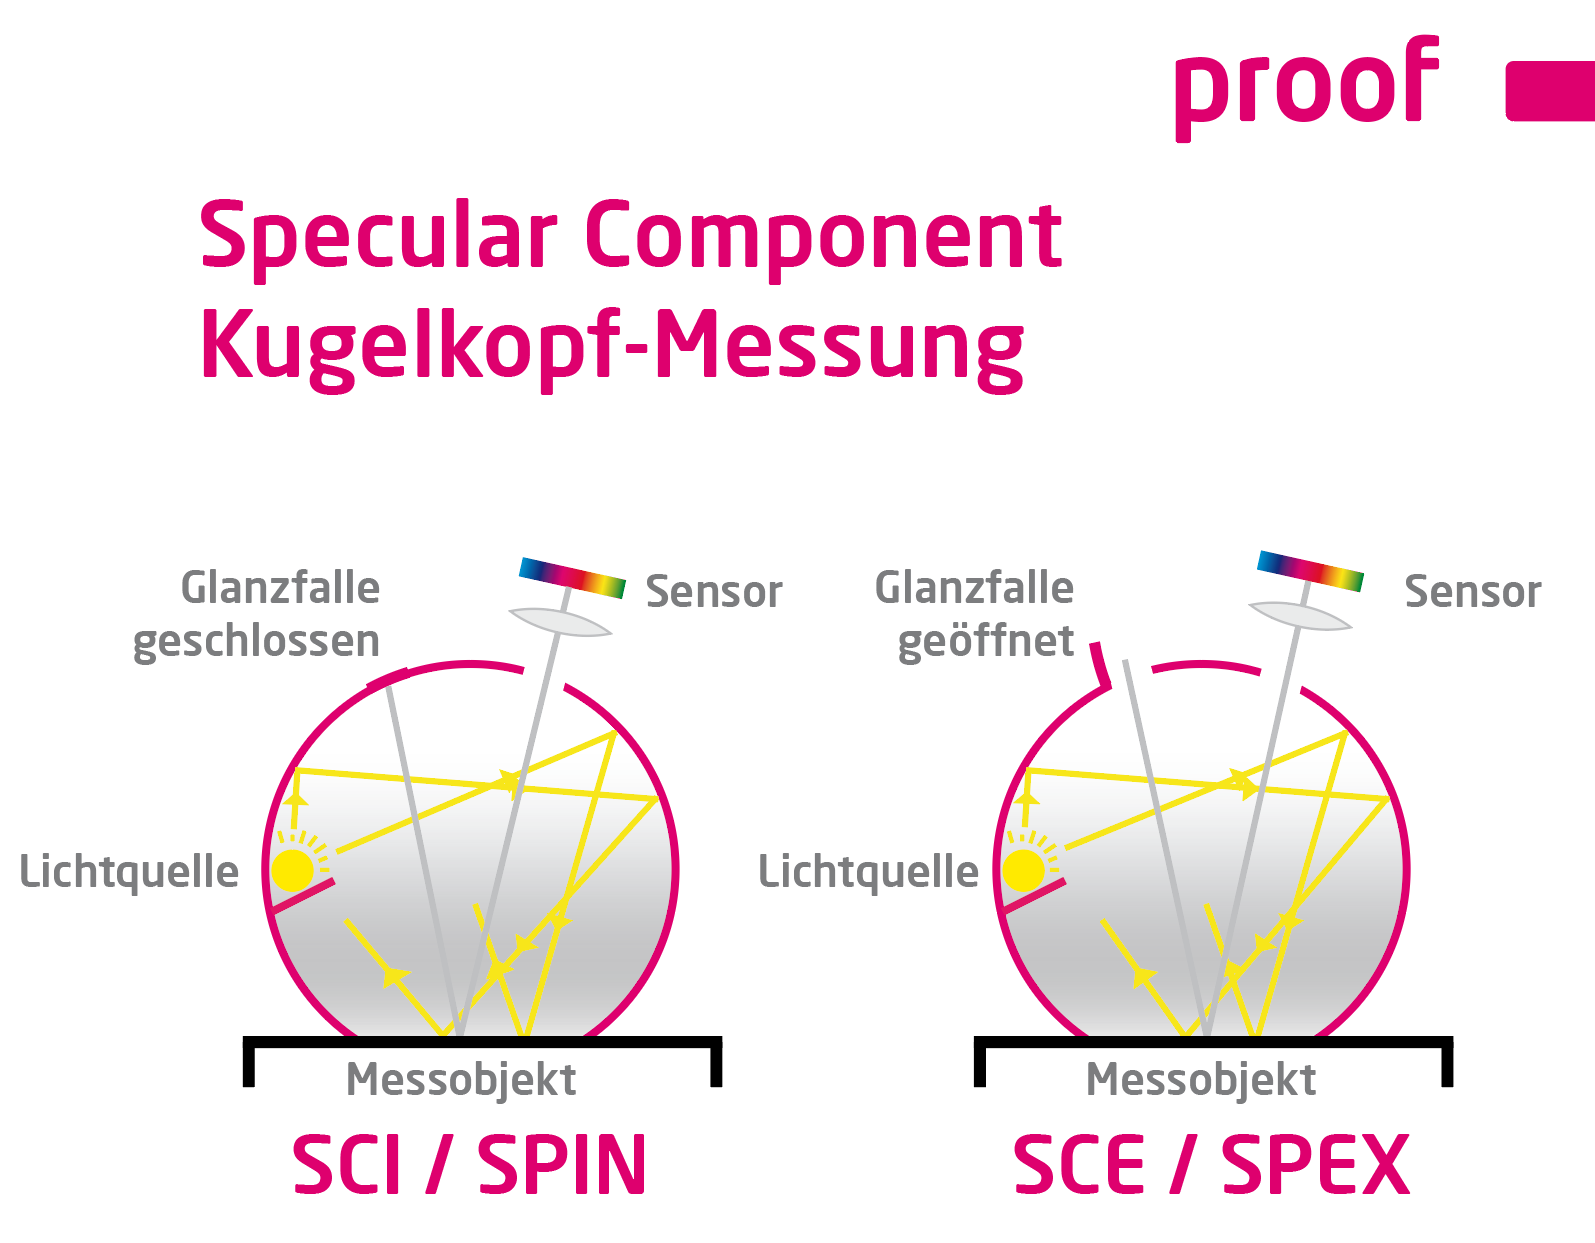 Explicación de la medición de componentes especulares con cabezal esférico SCI / SPIN y SCE / SPEX